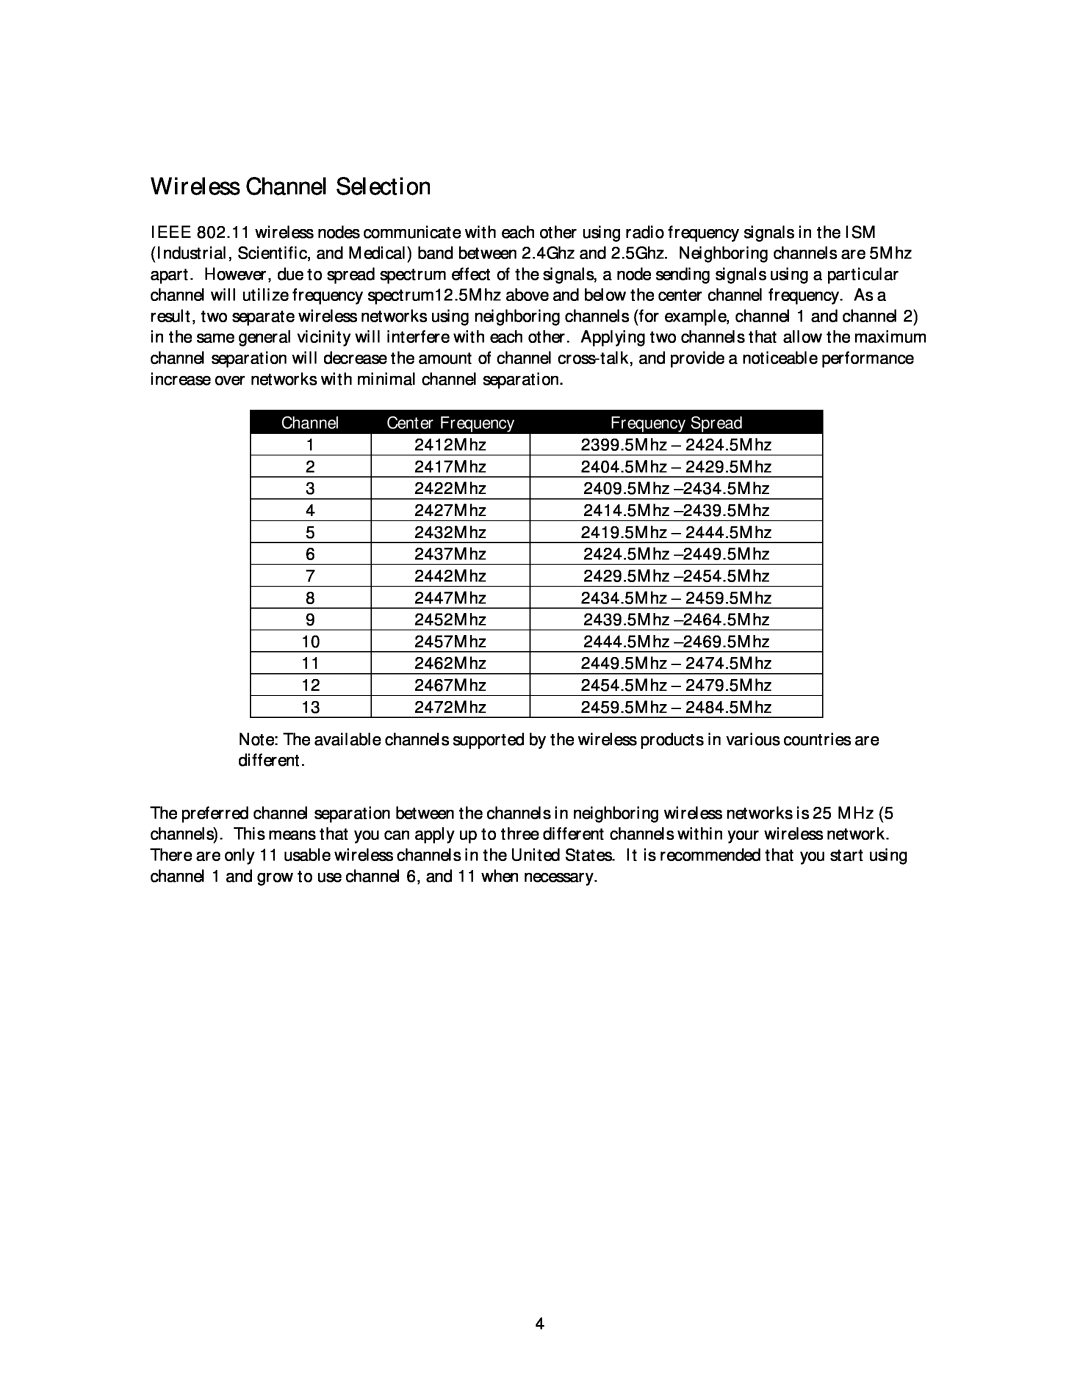 NETGEAR MA 301 manual Wireless Channel Selection, Frequency Spread 